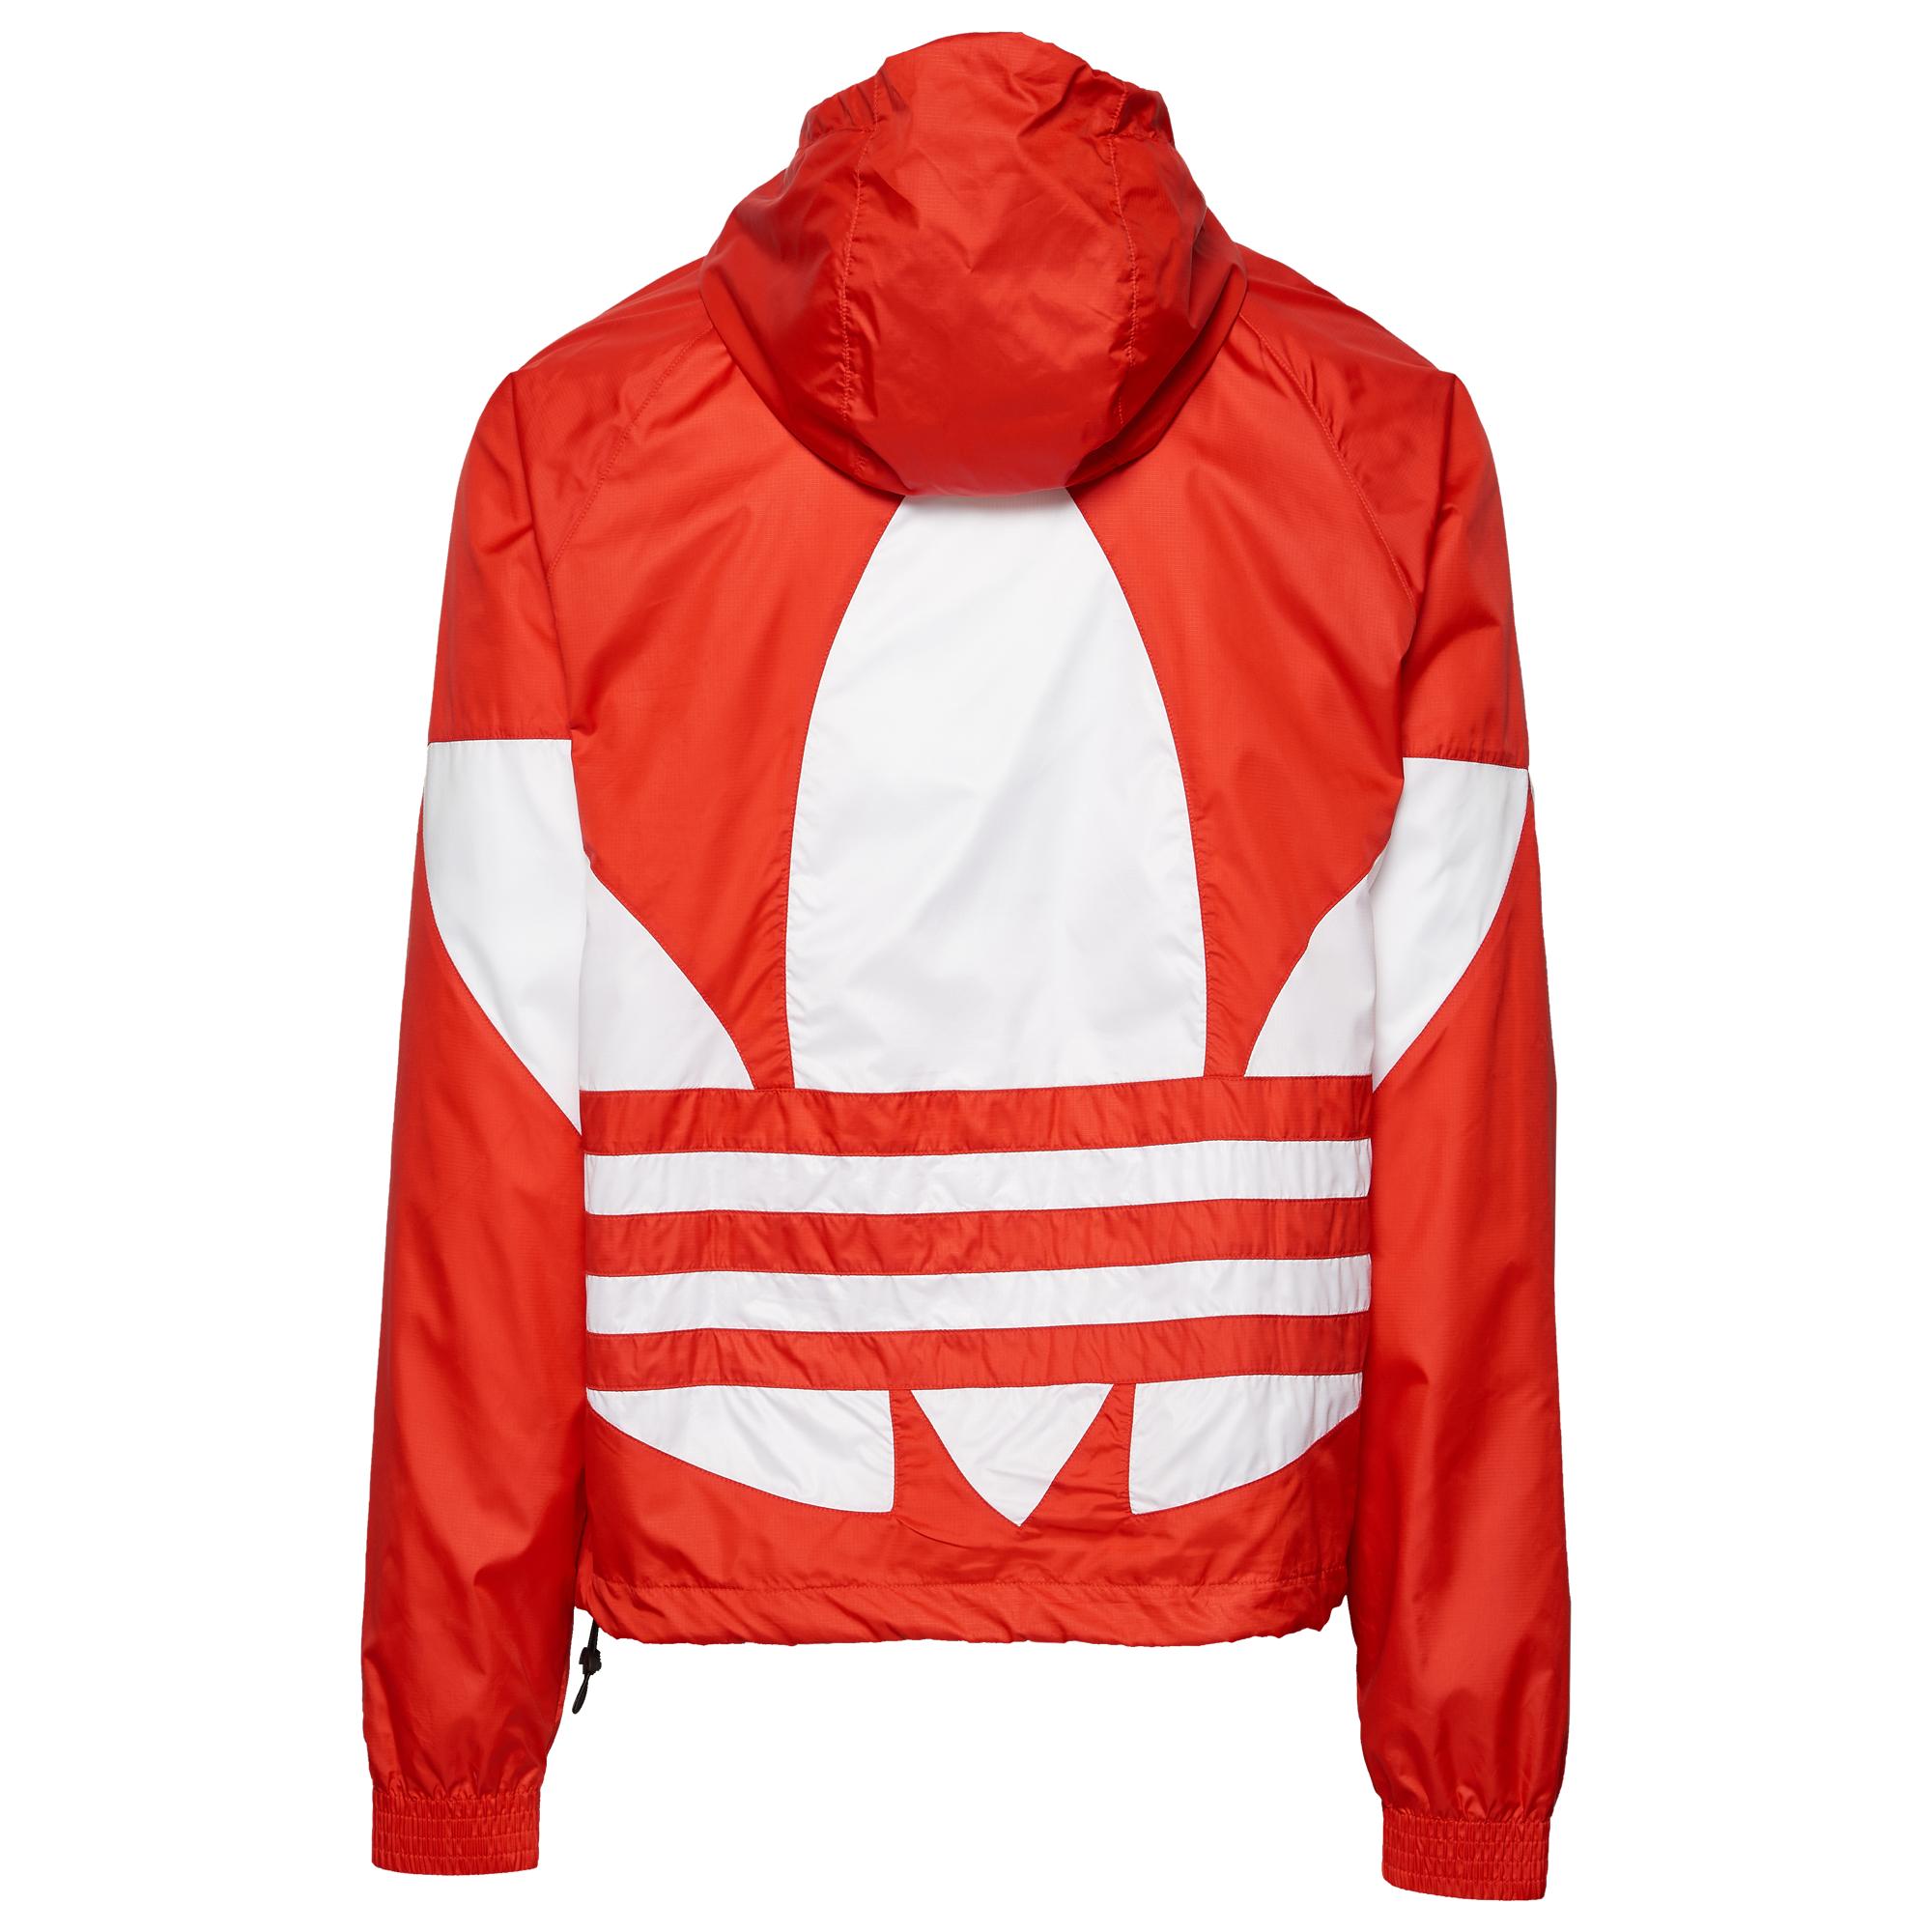 Buy > adidas originals red jacket > in stock